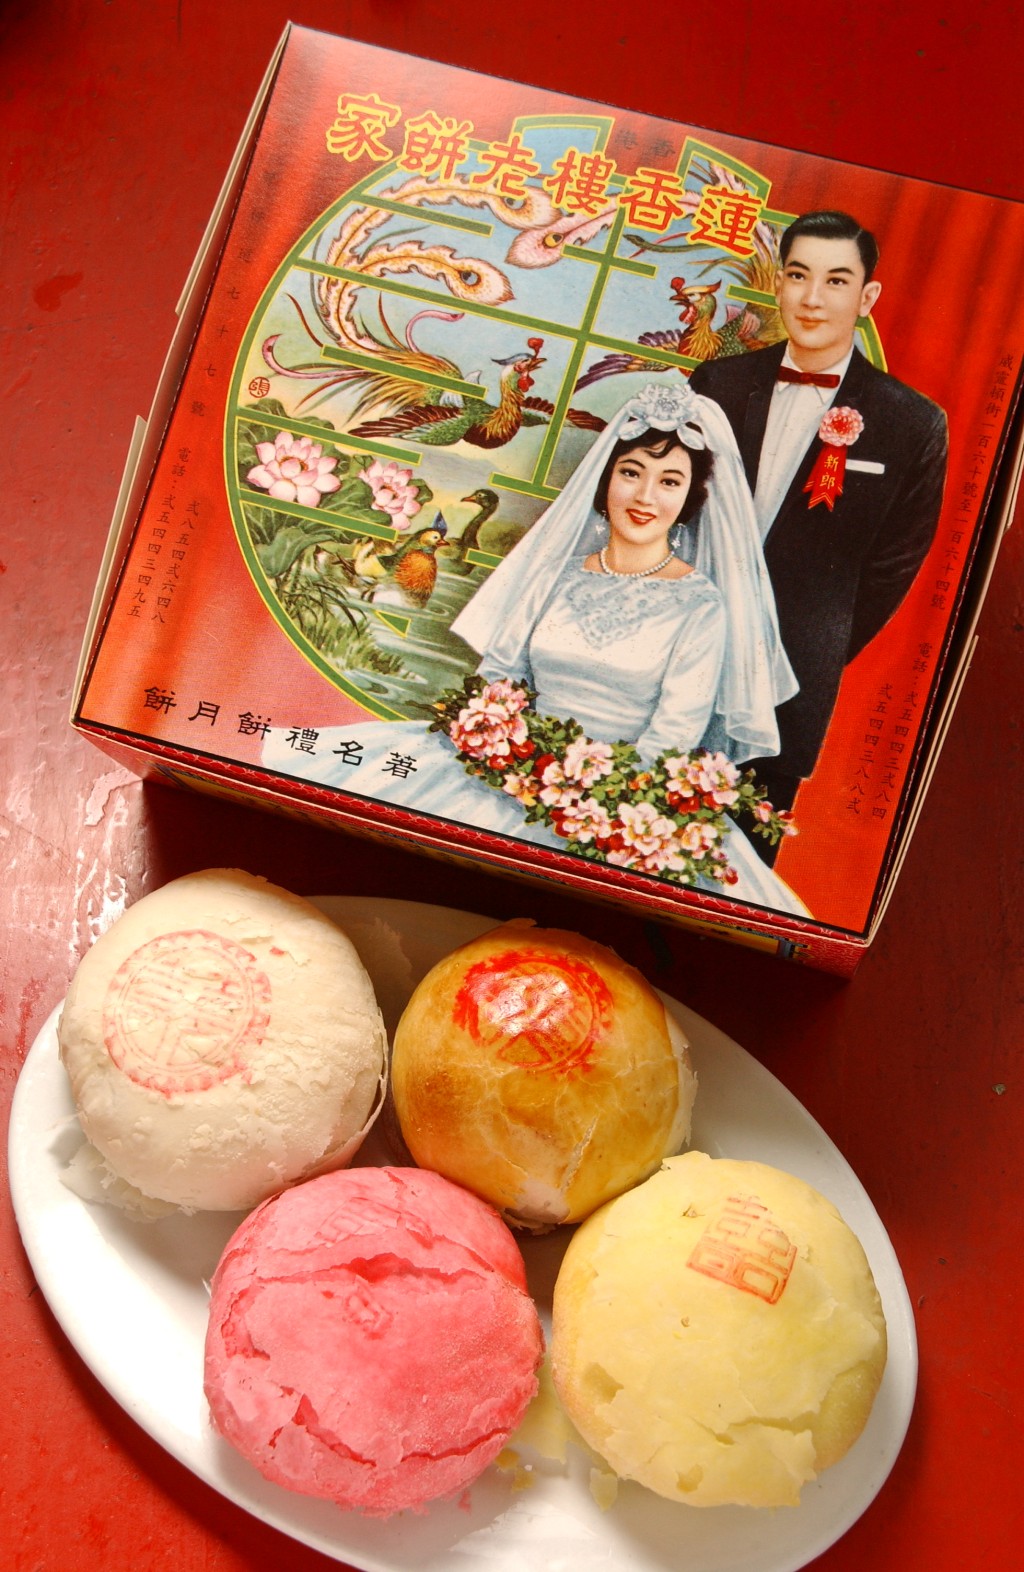 五十年前的莲香楼月饼是用纸盒盛载，盒面印有一对穿西方婚礼服的男女图像，相信也可当作嫁女饼盒。